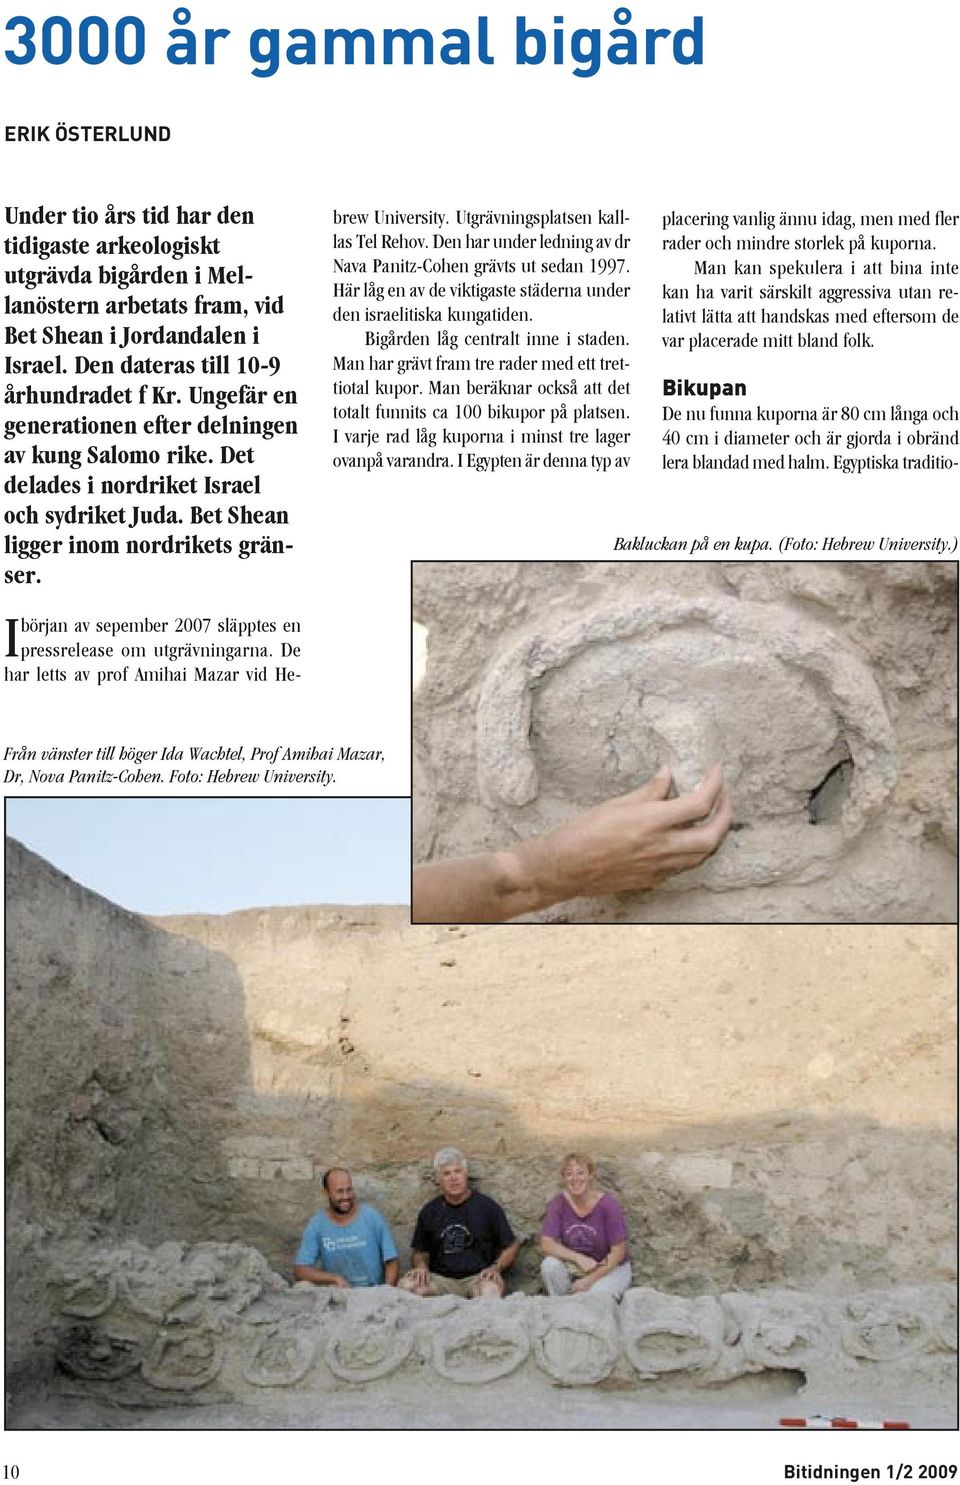 början av sepember 2007 släpptes en I pressrelease om utgrävningarna. De har letts av prof Amihai Mazar vid Hebrew University. Utgrävningsplatsen kalllas Tel Rehov.